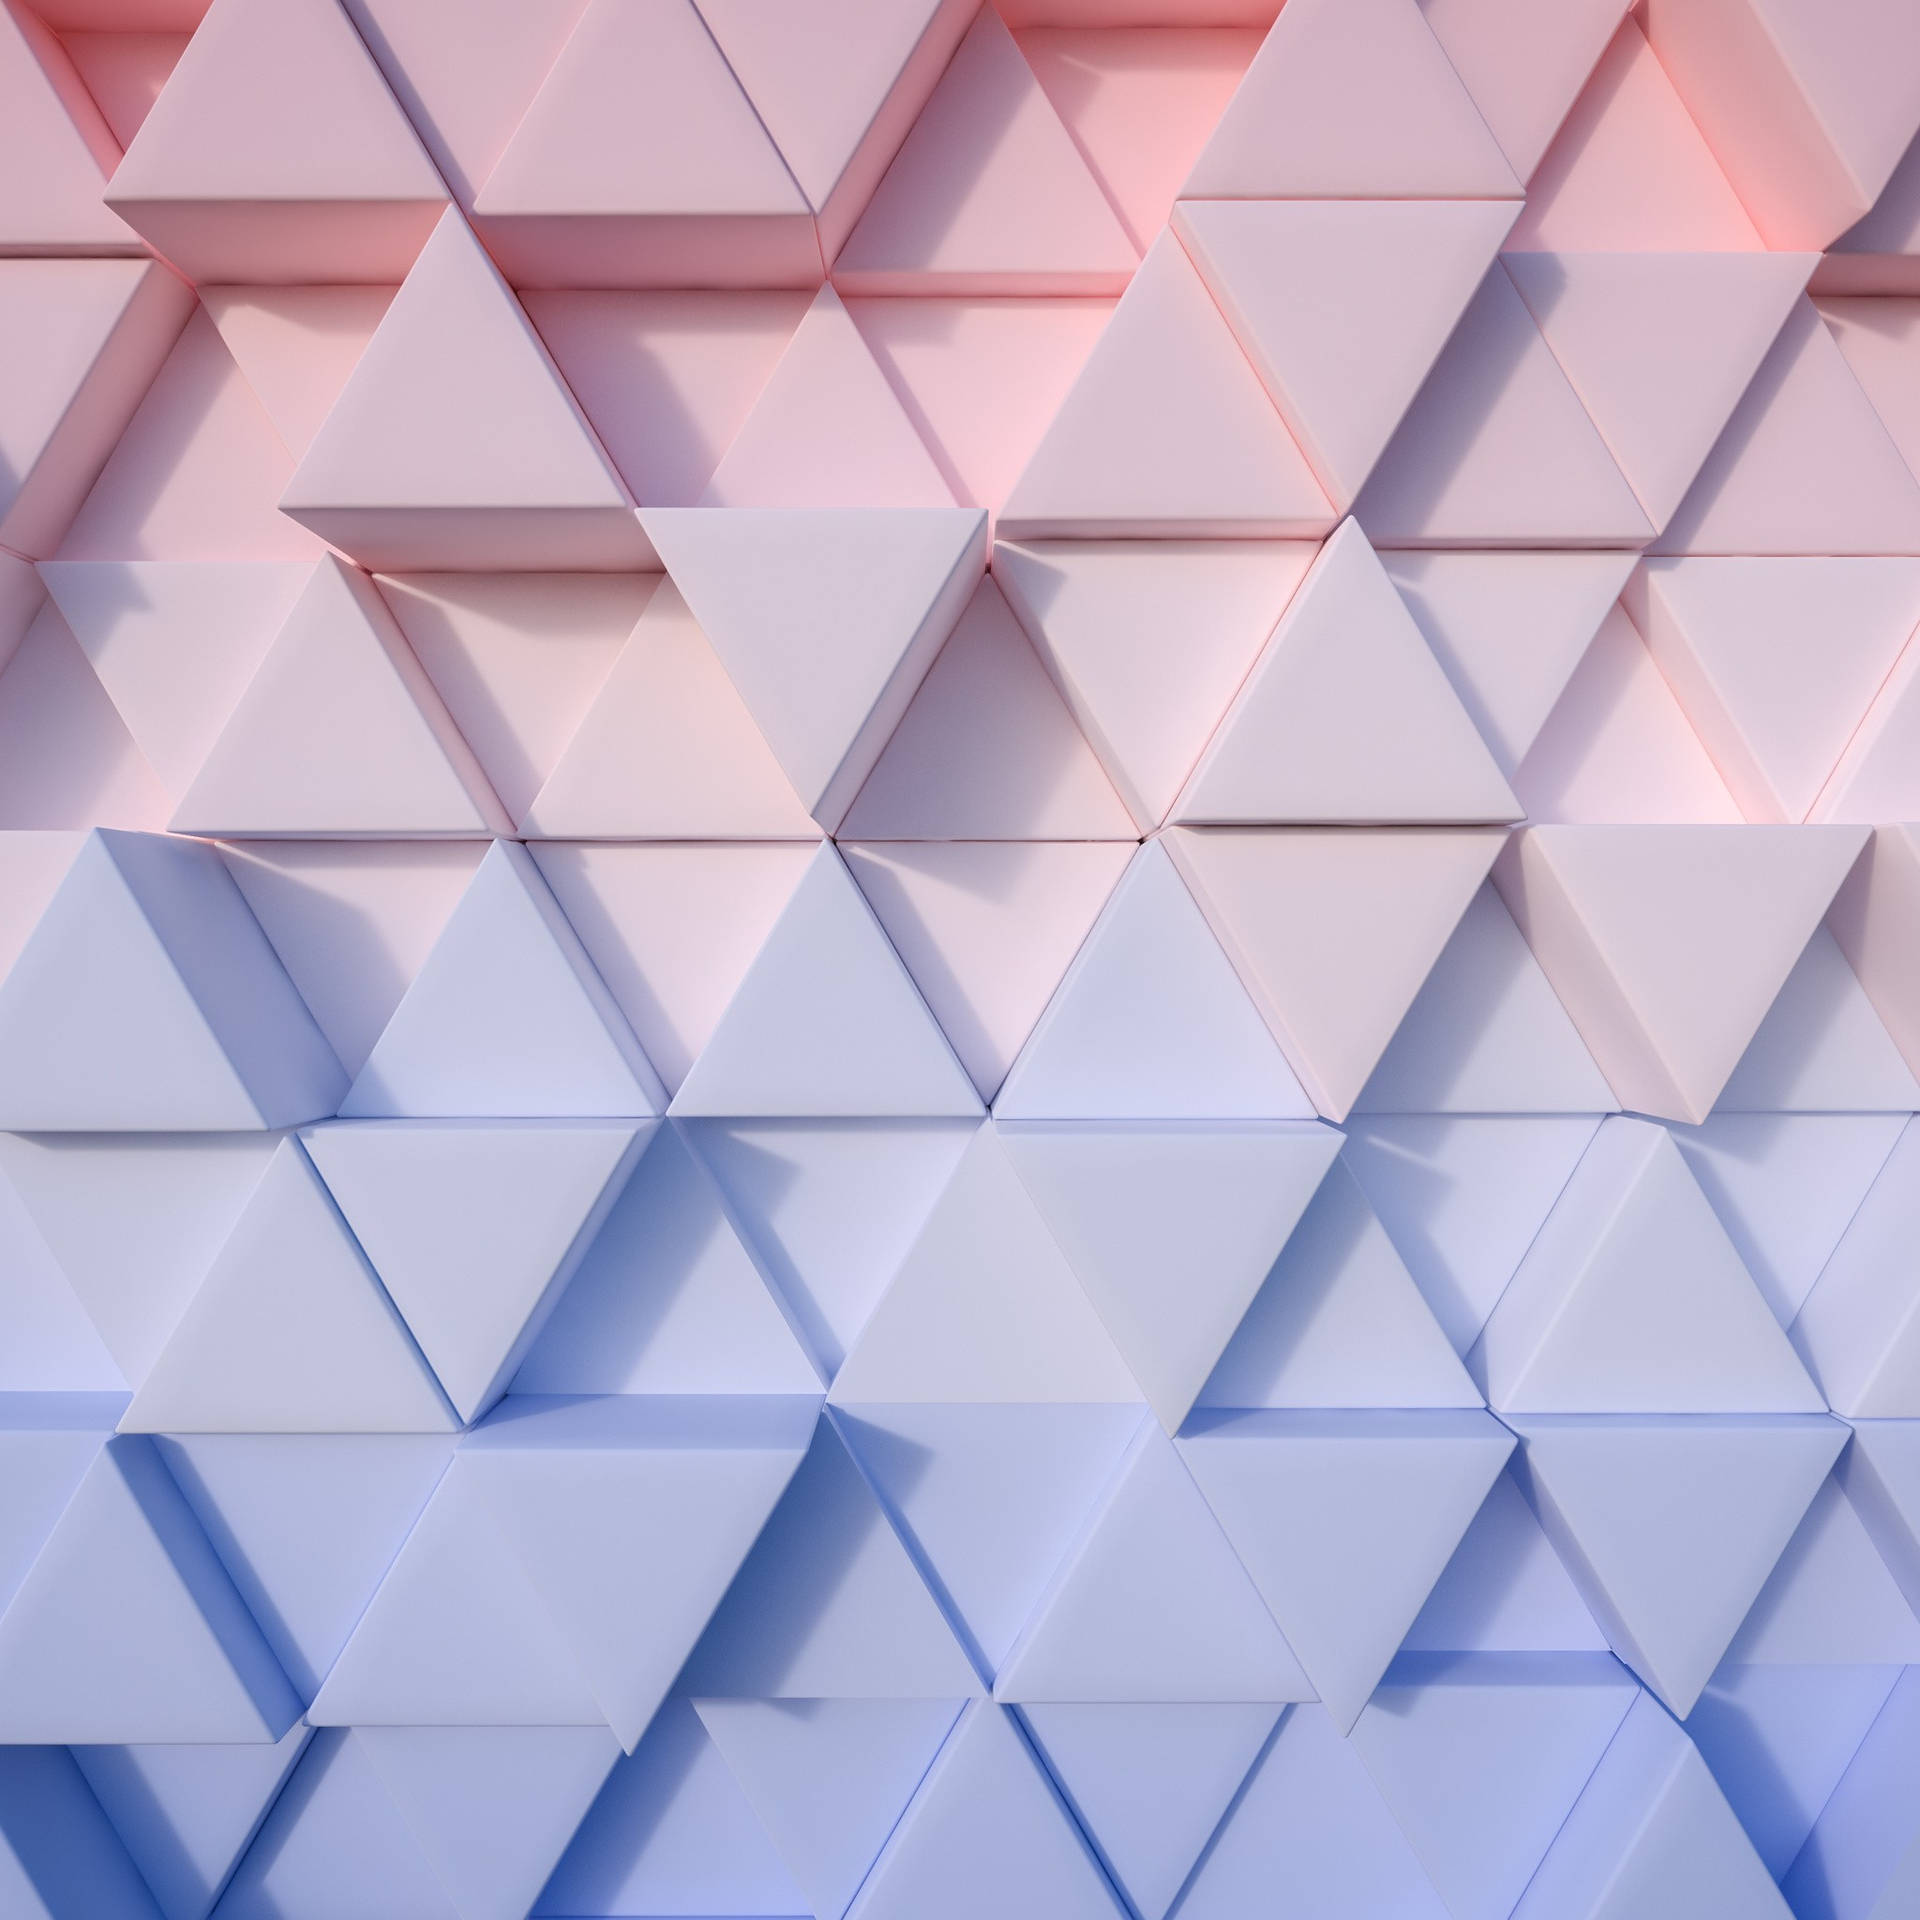 Aesthetic Ipad Triangular Shapes Background